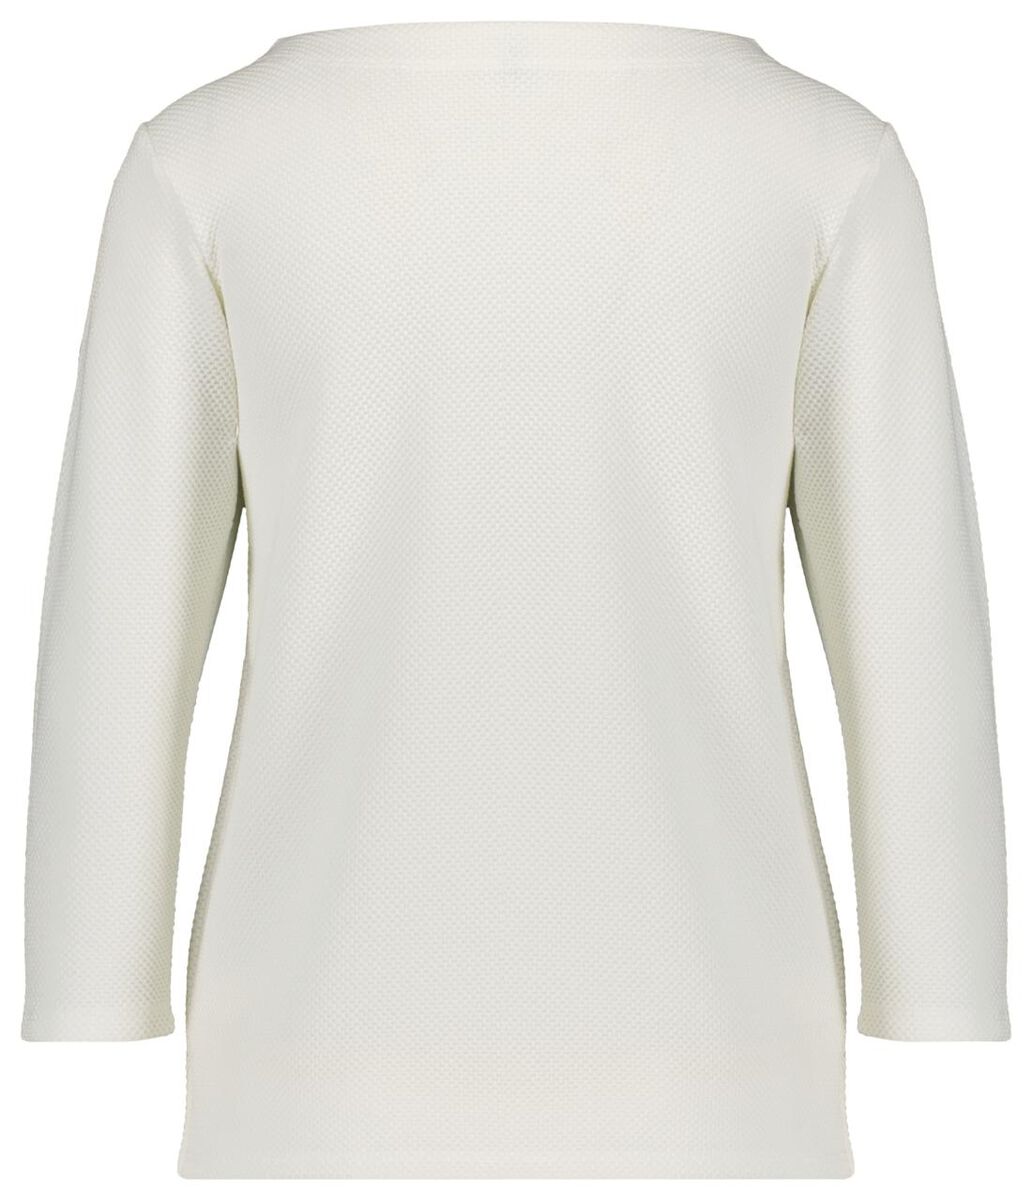 Damen-Shirt, Struktur eierschalenfarben S - 36289657 - HEMA